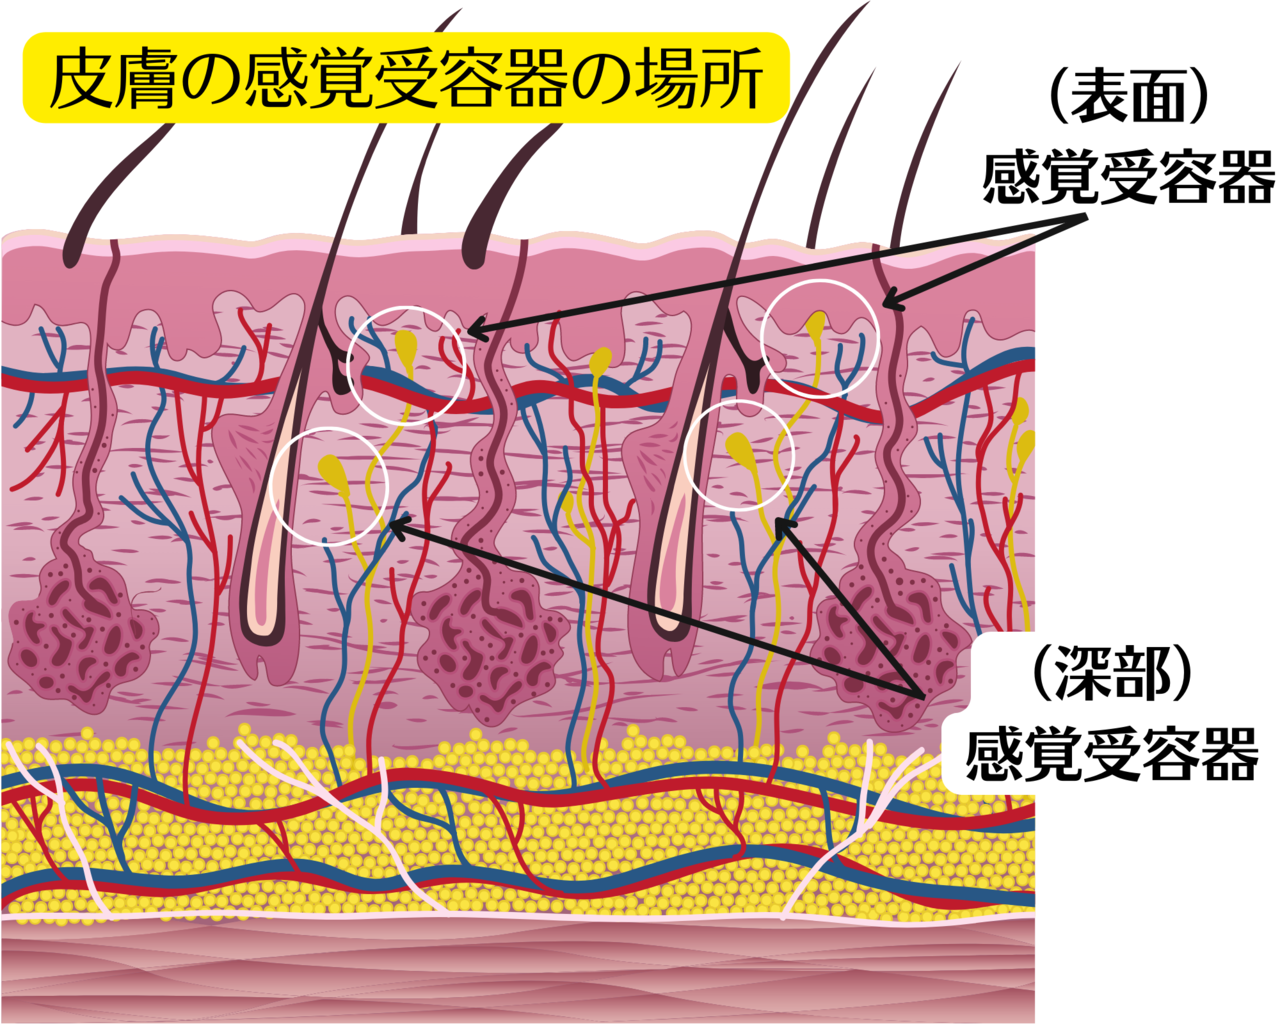 皮膚にある感覚受容器の構造